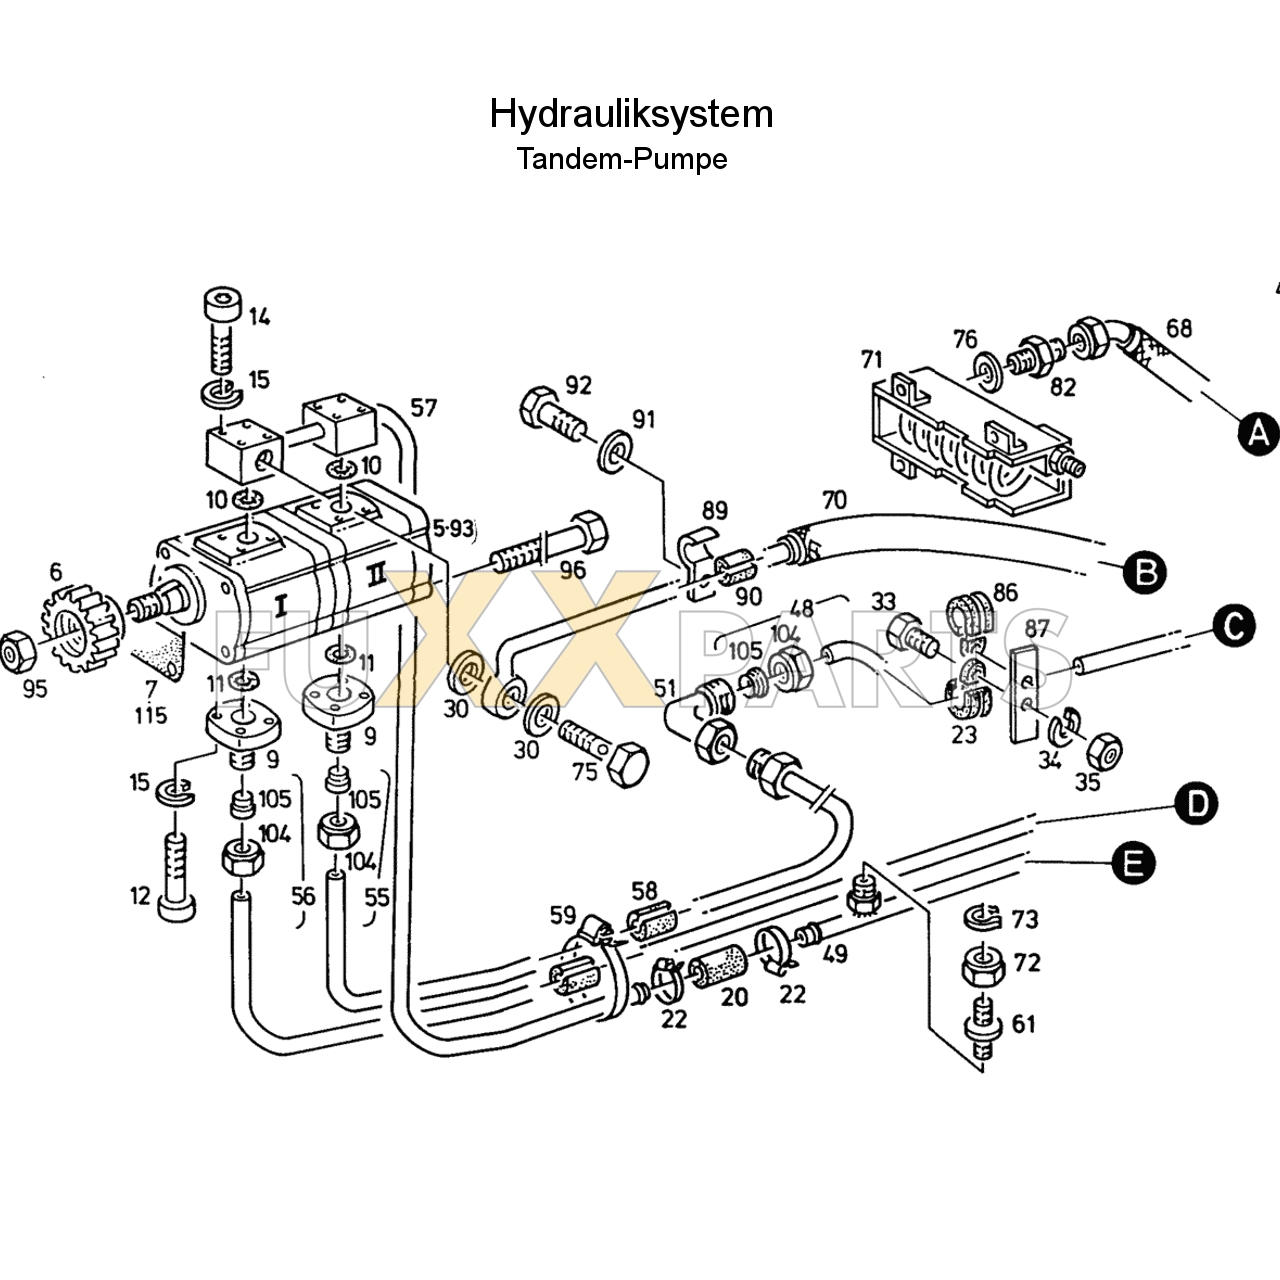 D 7207 C Hydrauliksystem Tandem 1